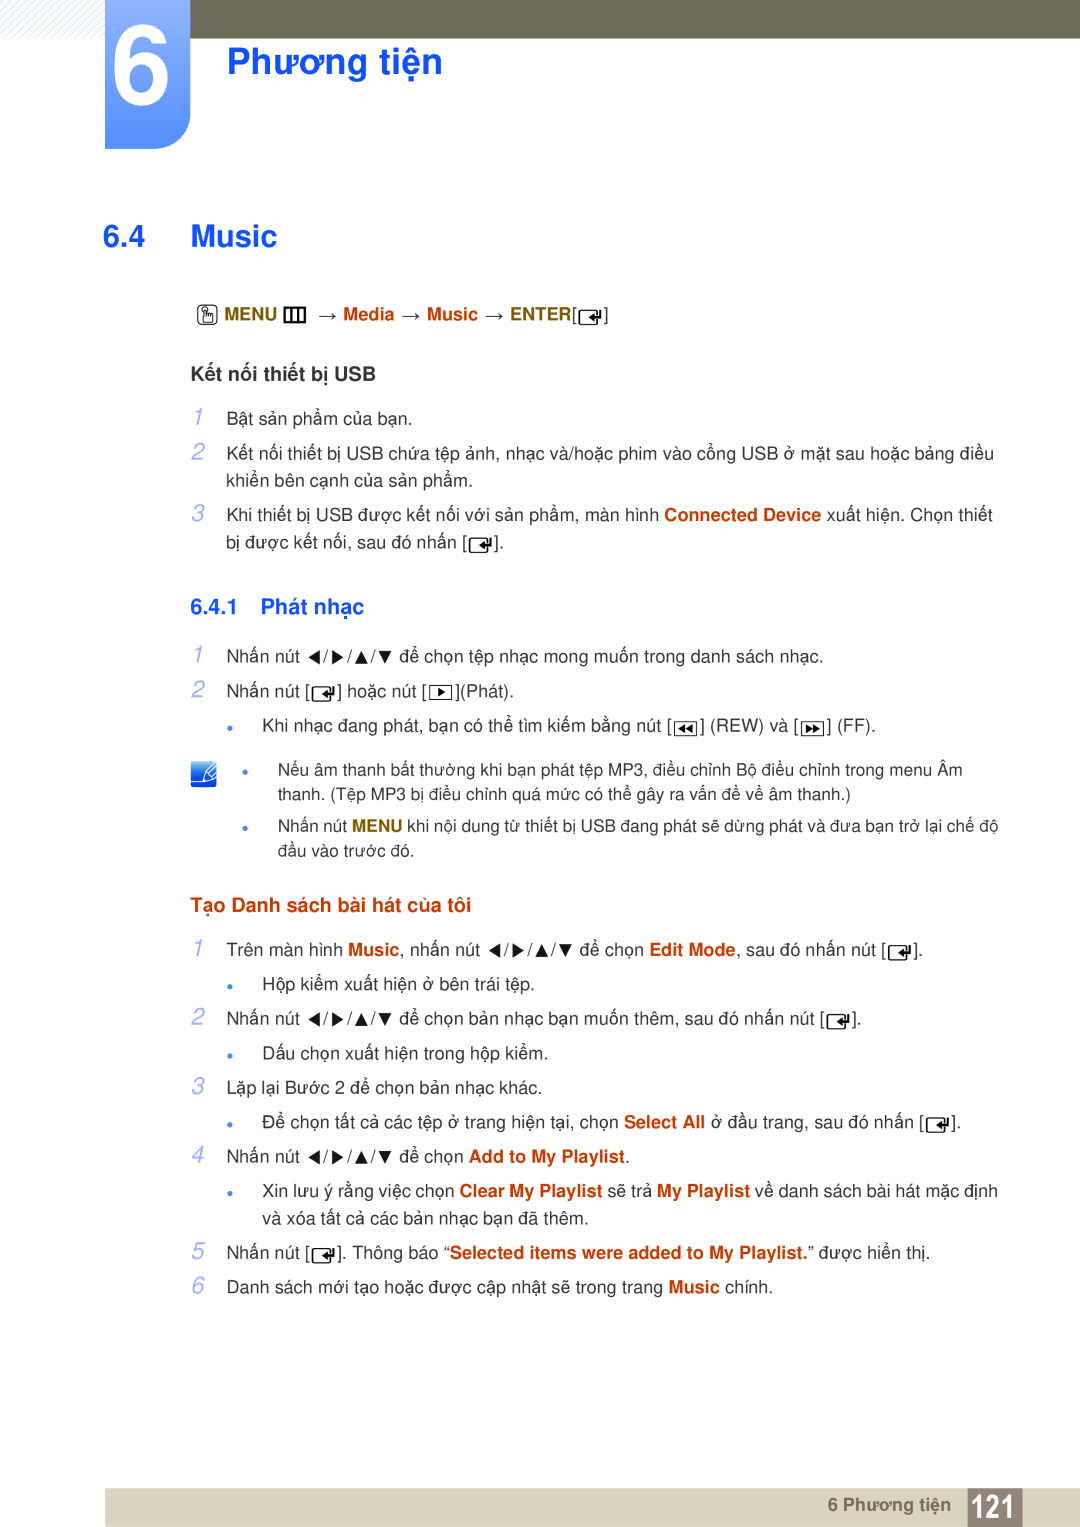 Samsung LH55MEPLGC/XY manual 6.4.1 Phát nhạc, 6 Phương tiện, Tạo Danh sách bài hát của tôi, O MENU m Media Music ENTER 